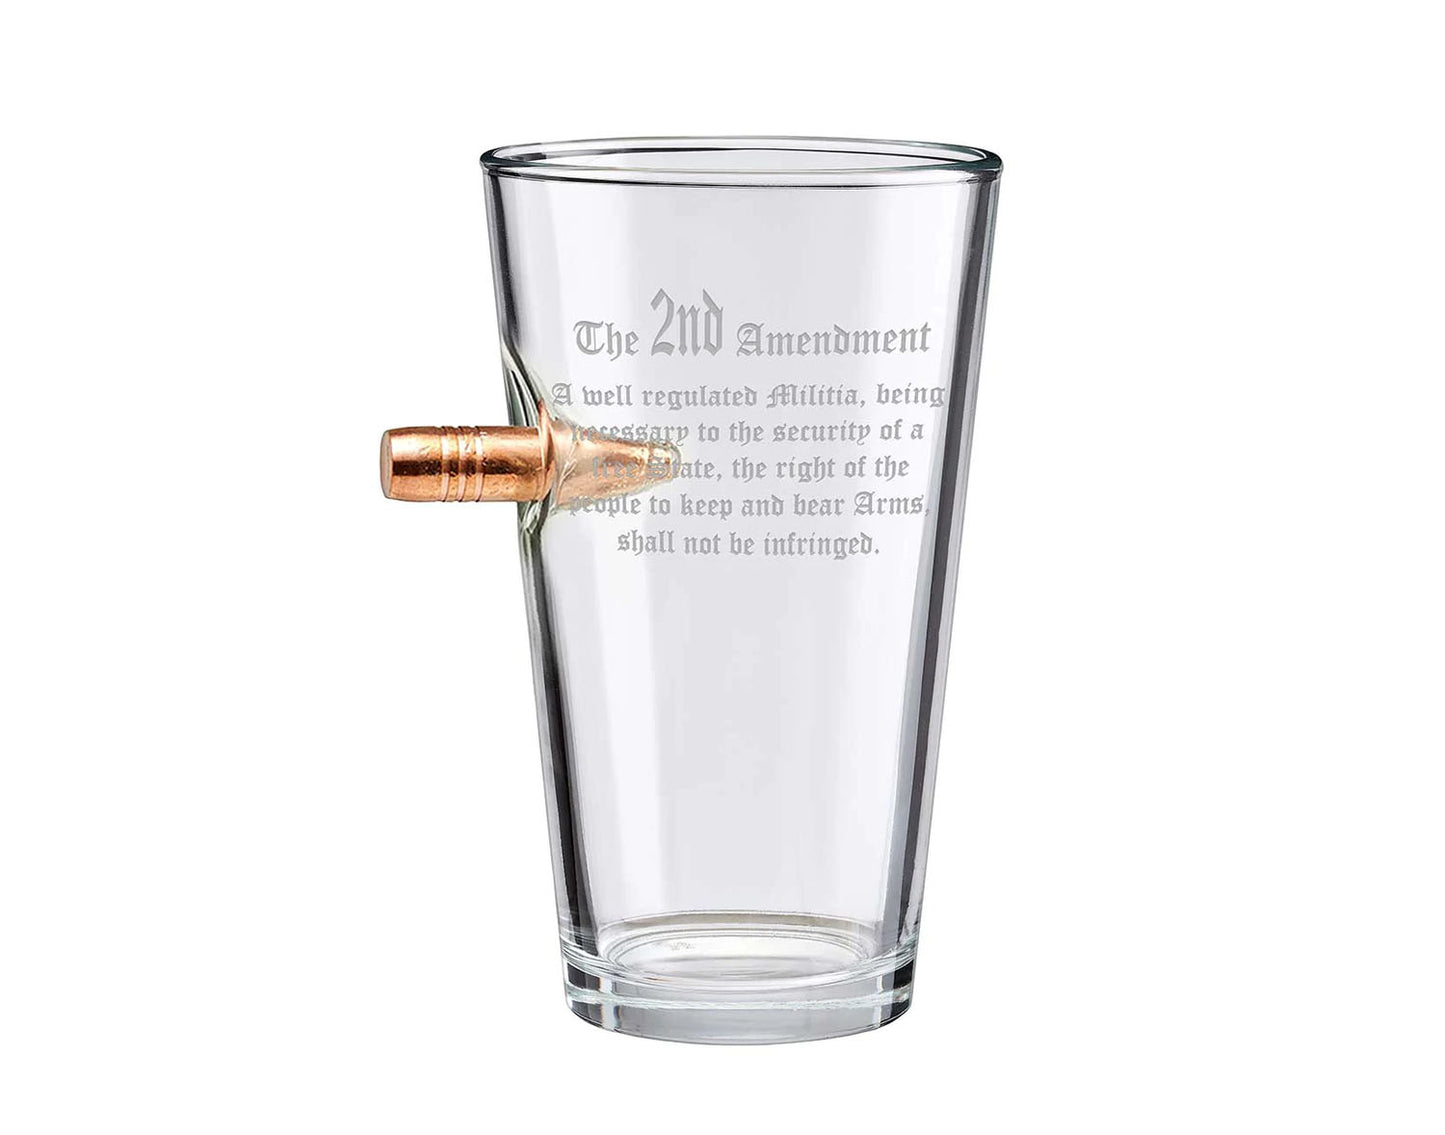 BenShot - "Bulletproof" 2nd Amendment Pint Glass - 16oz